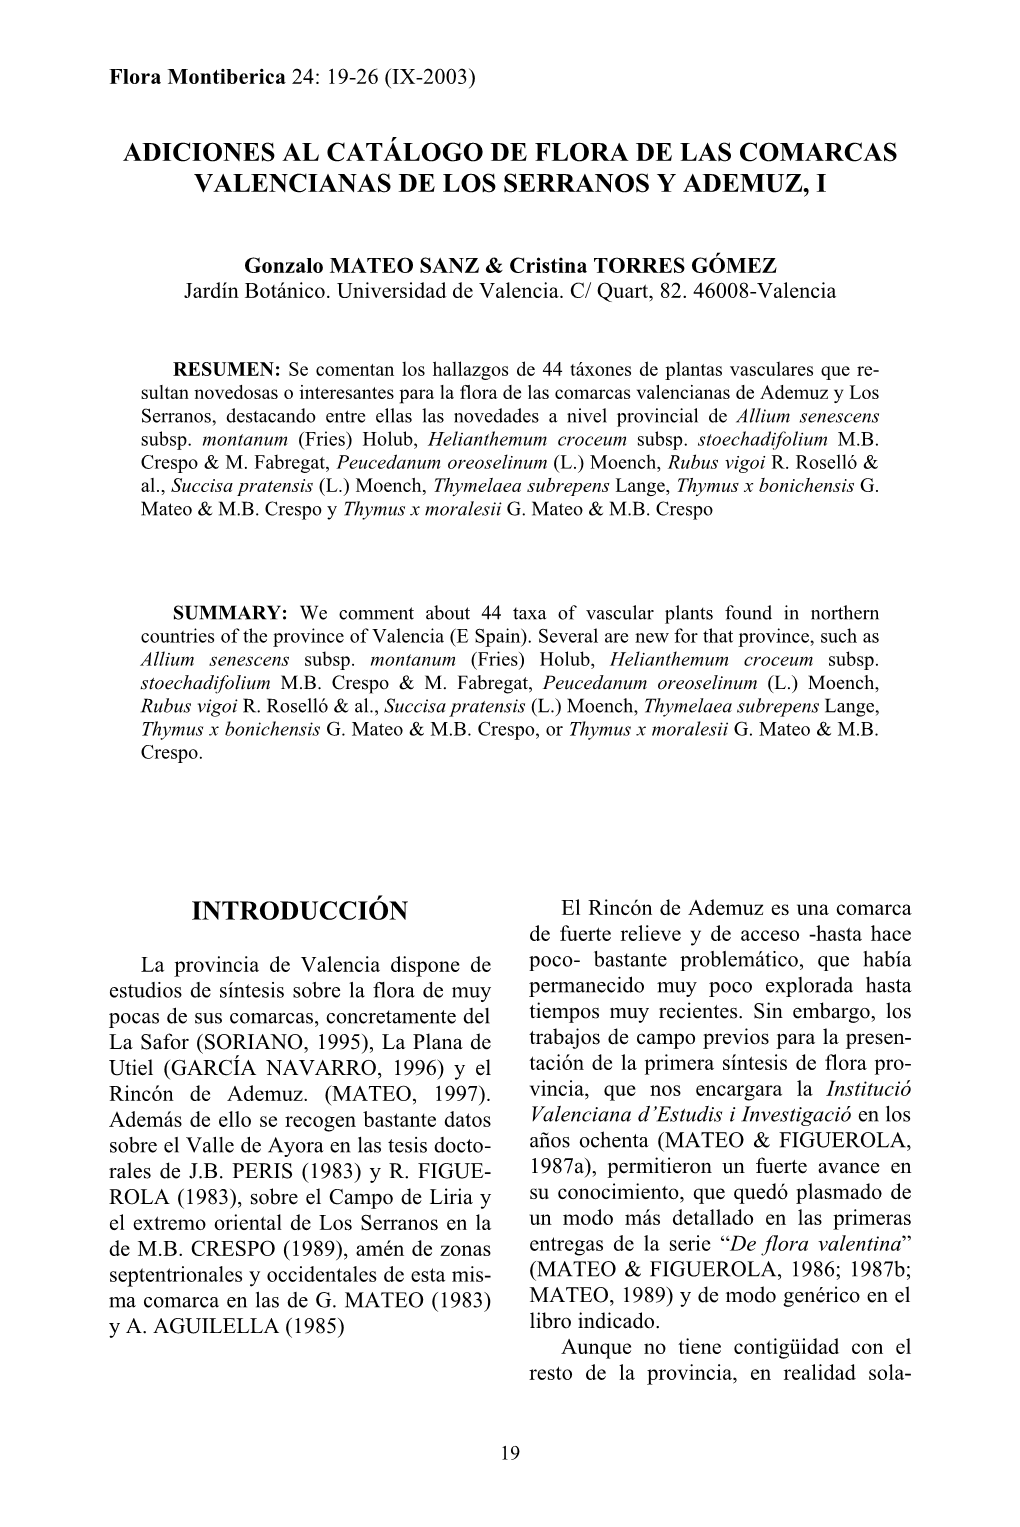 Adiciones Al Catálogo De Flora De Las Comarcas Valencianas De Los Serranos Y Ademuz, I